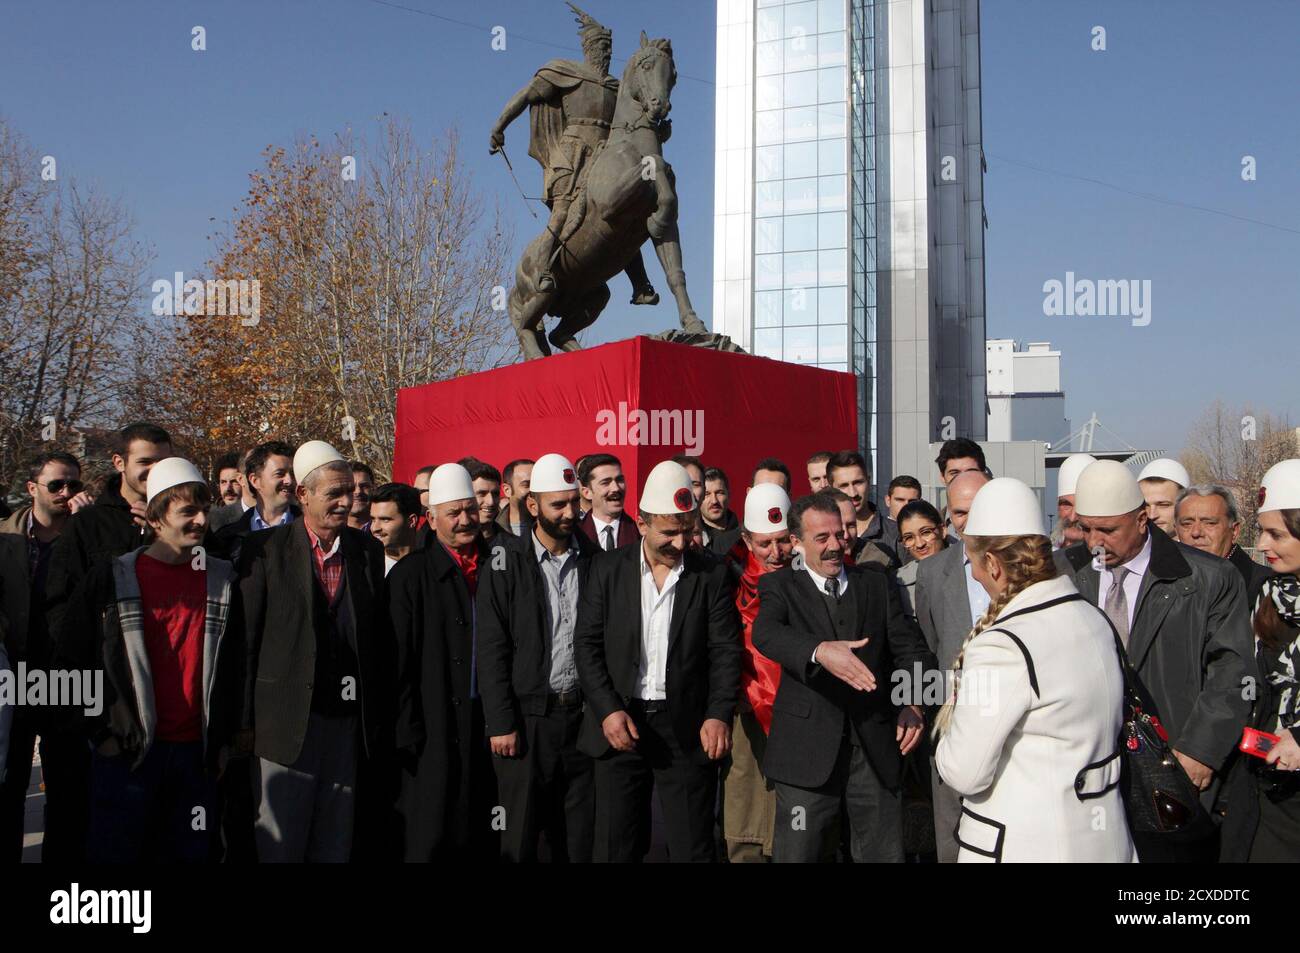 Los albaneses de Kosovo se encuentran frente al Monumento Nacional Héroe Skenderbeu durante un evento que Marca la próxima Declaración de Independencia de Albania en Pristina el 26 de noviembre de 2012. Las personas que asistieron al evento guardaron o llevaban bigotes falsos para parecerse a algunos de los firmantes de la declaración que tenían bigotes. Los albaneses celebrarán el centenario de su independencia el 28 de noviembre. Foto tomada el 26 de noviembre de 2012. REUTERS/Hazir Reka (KOSOVO - Tags: ANIVERSARIO DISTURBIOS CIVILES SOCIEDAD POLÍTICA) Foto de stock